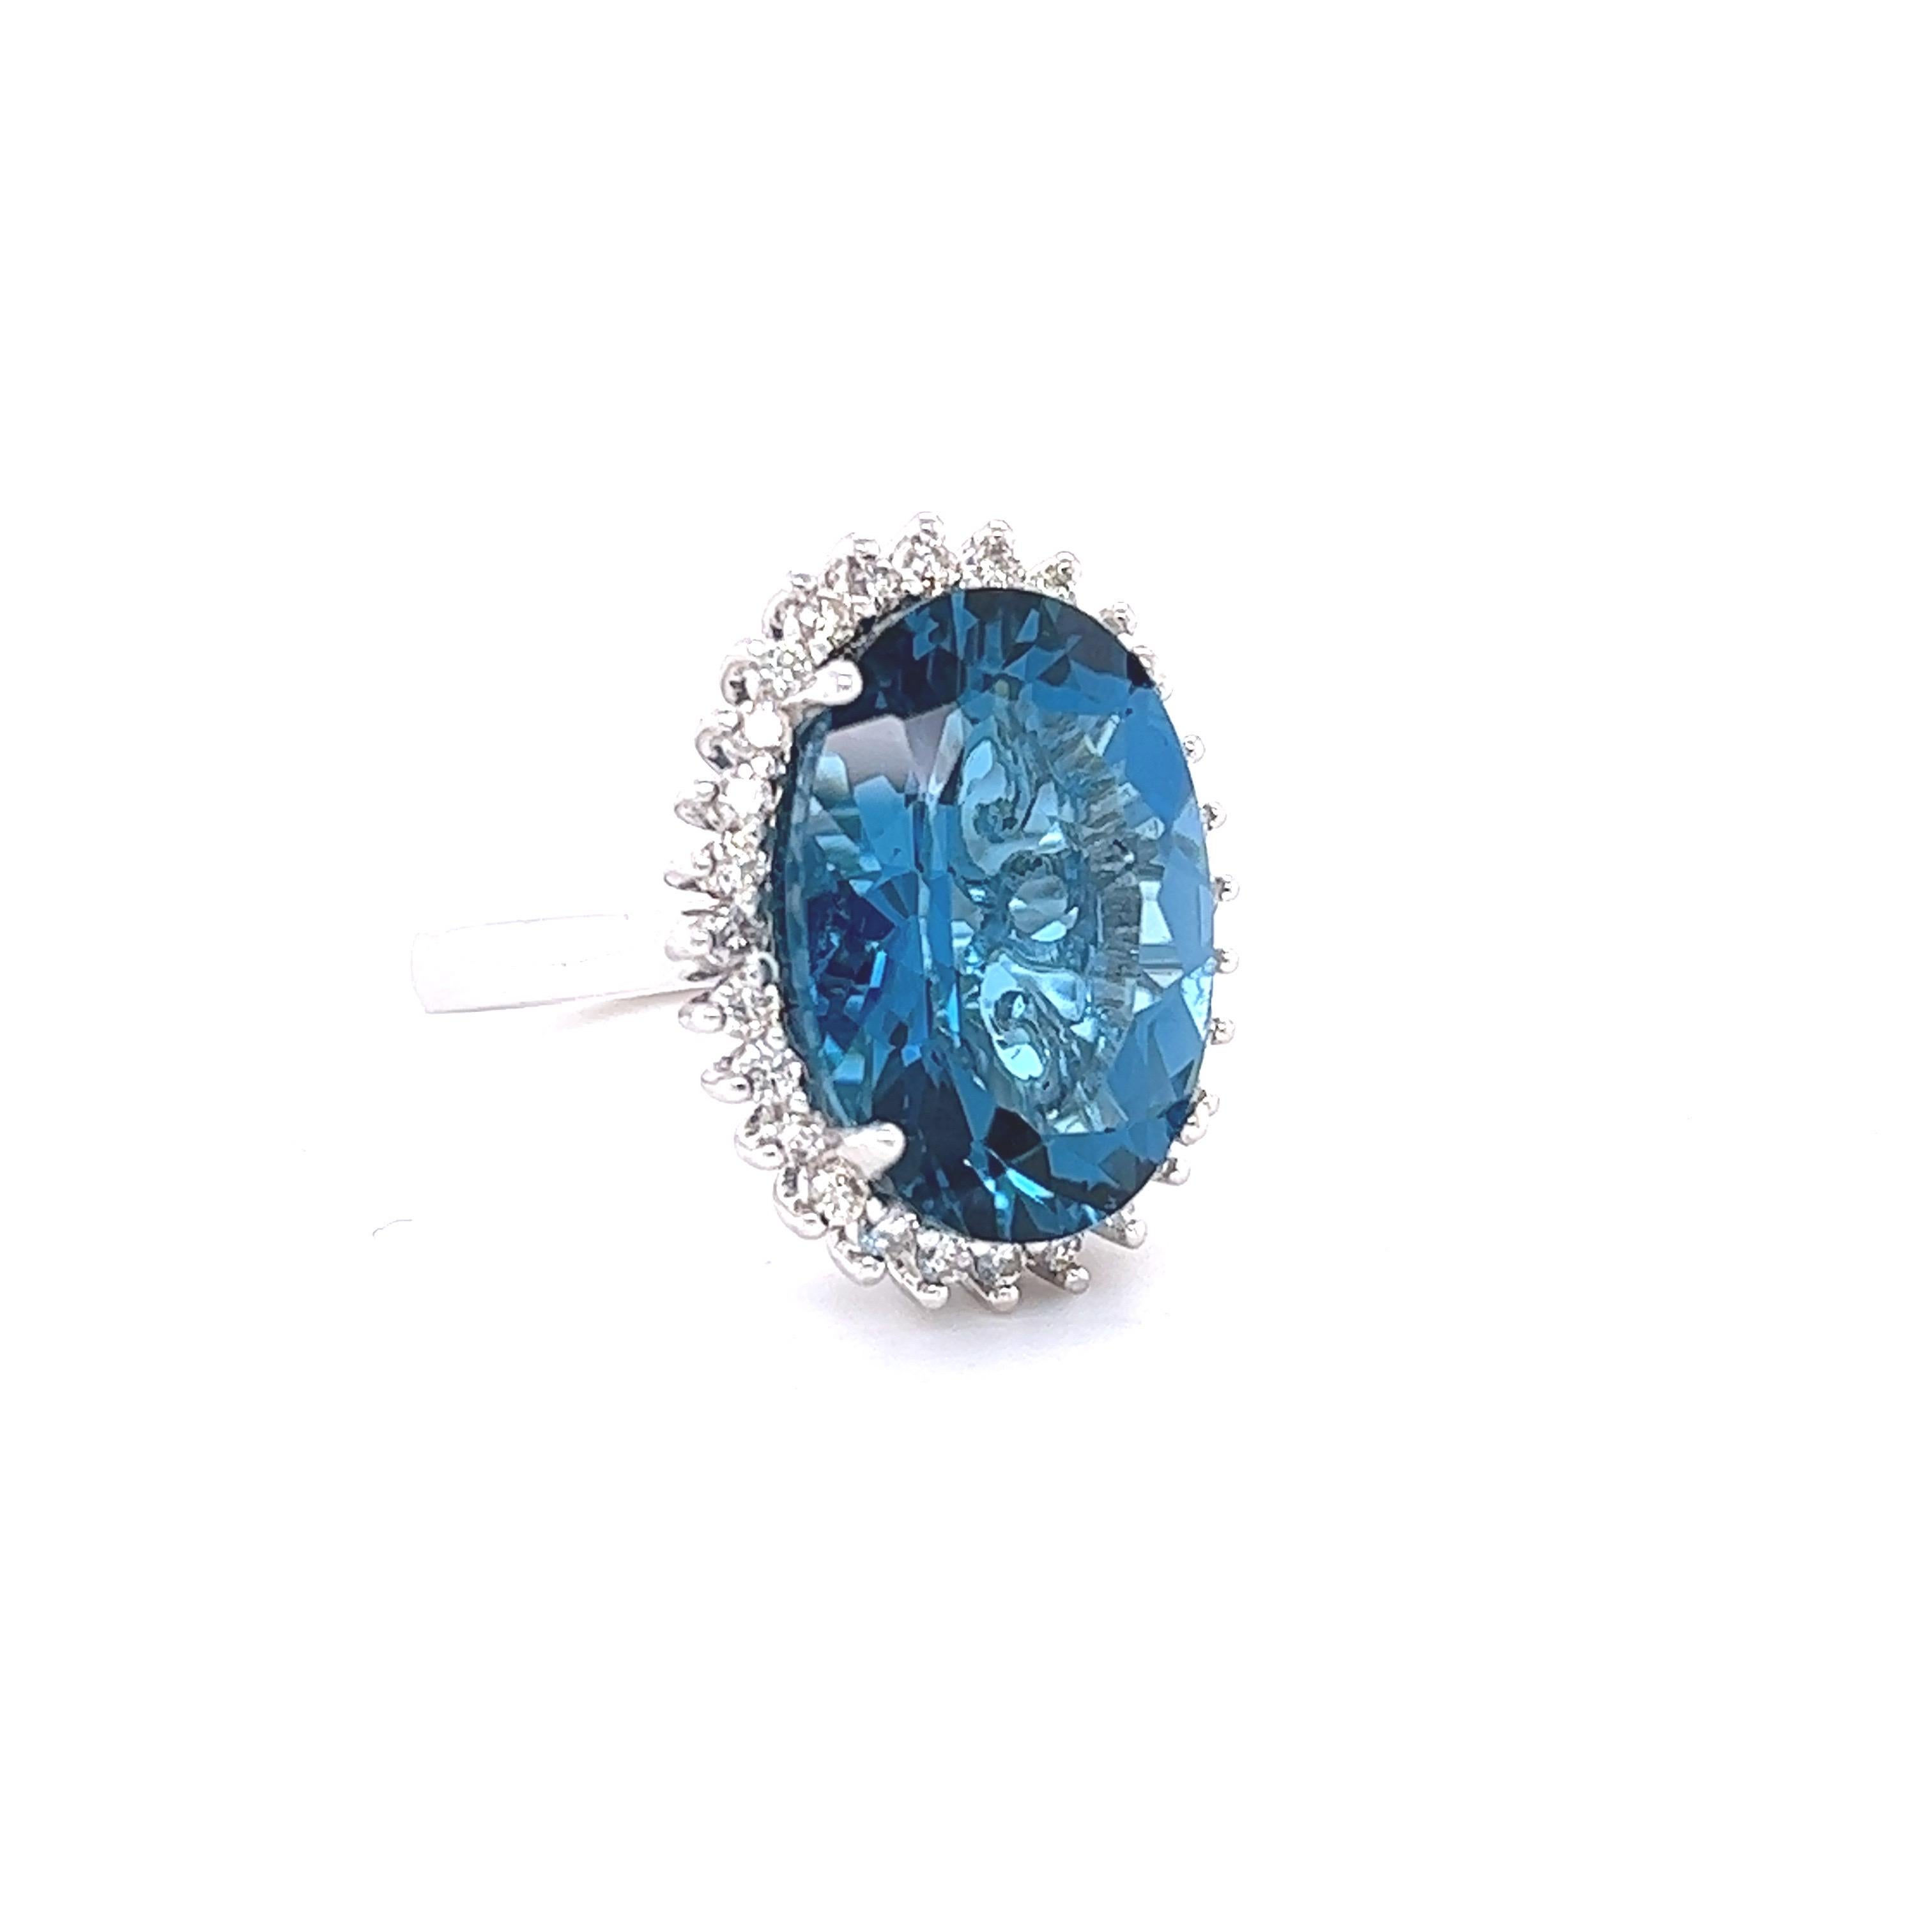 Cette magnifique bague est ornée d'une grande topaze bleue de taille ovale pesant 13,62 carats. 
Il est entouré d'un simple halo de 28 diamants ronds pesant 0,57 carats. (Clarté : VS, Couleur : H)

Il est réalisé en or blanc 14 carats et pèse